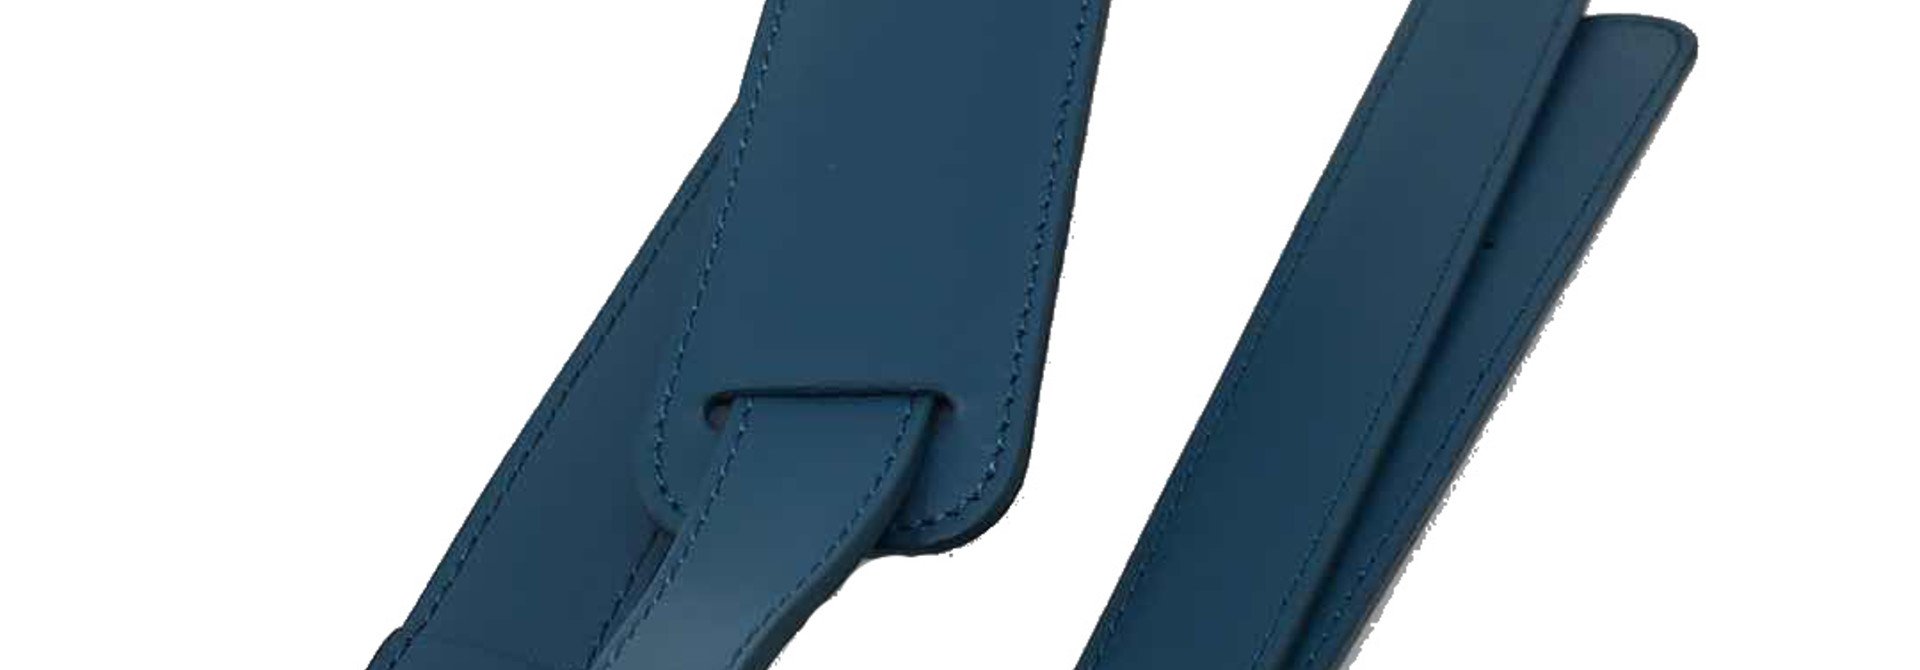 Shoulder Strap for Women 13.3 and 15.6 inch Laptop Bag - Messenger Bag - Split Leather - Turquoise